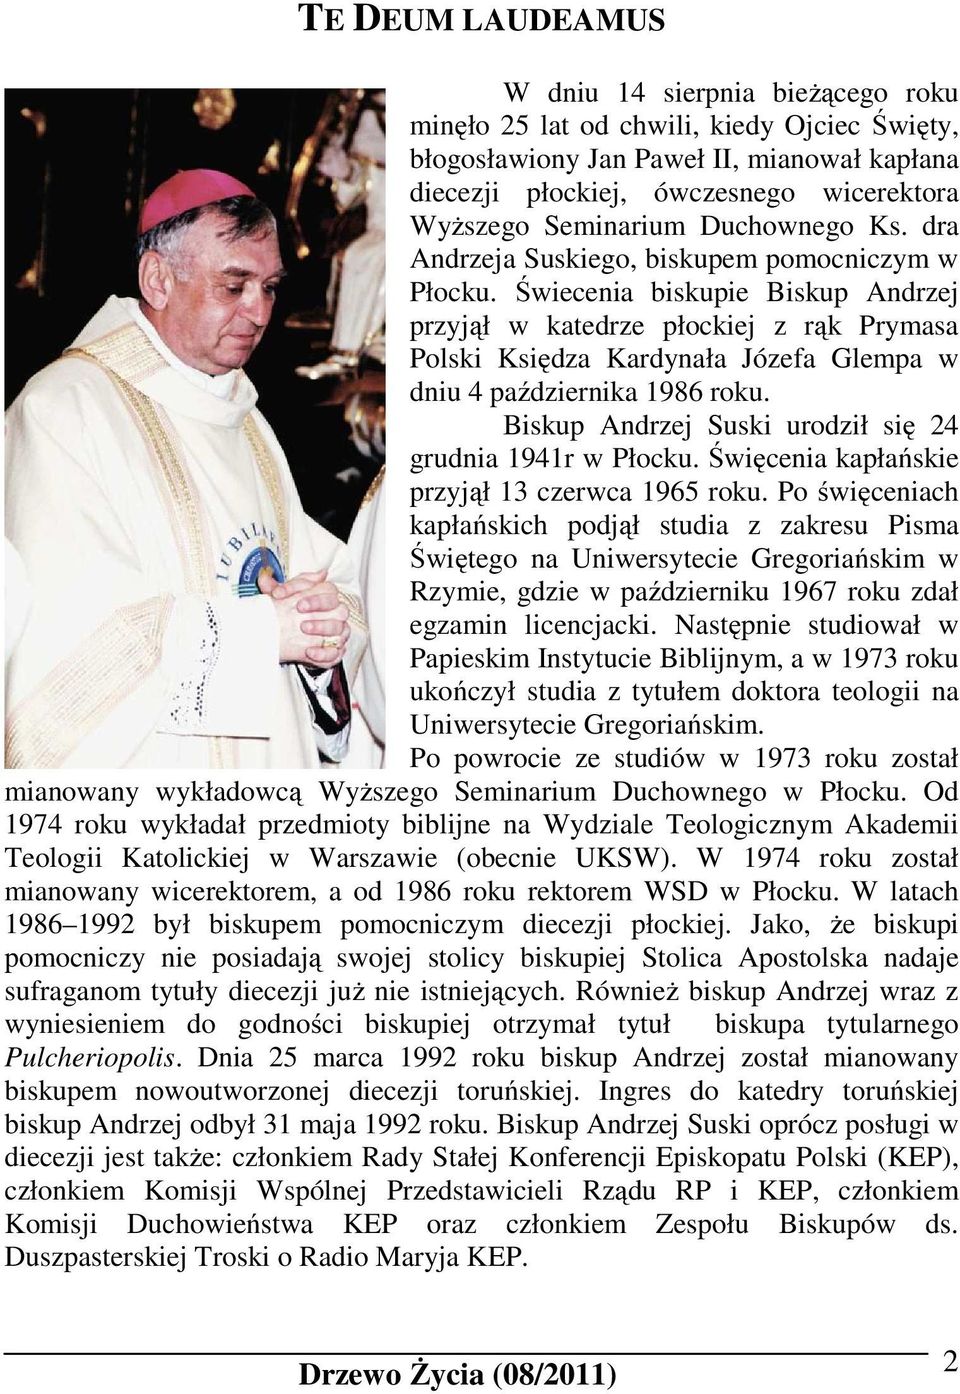 Świecenia biskupie Biskup Andrzej przyjął w katedrze płockiej z rąk Prymasa Polski Księdza Kardynała Józefa Glempa w dniu 4 października 1986 roku.